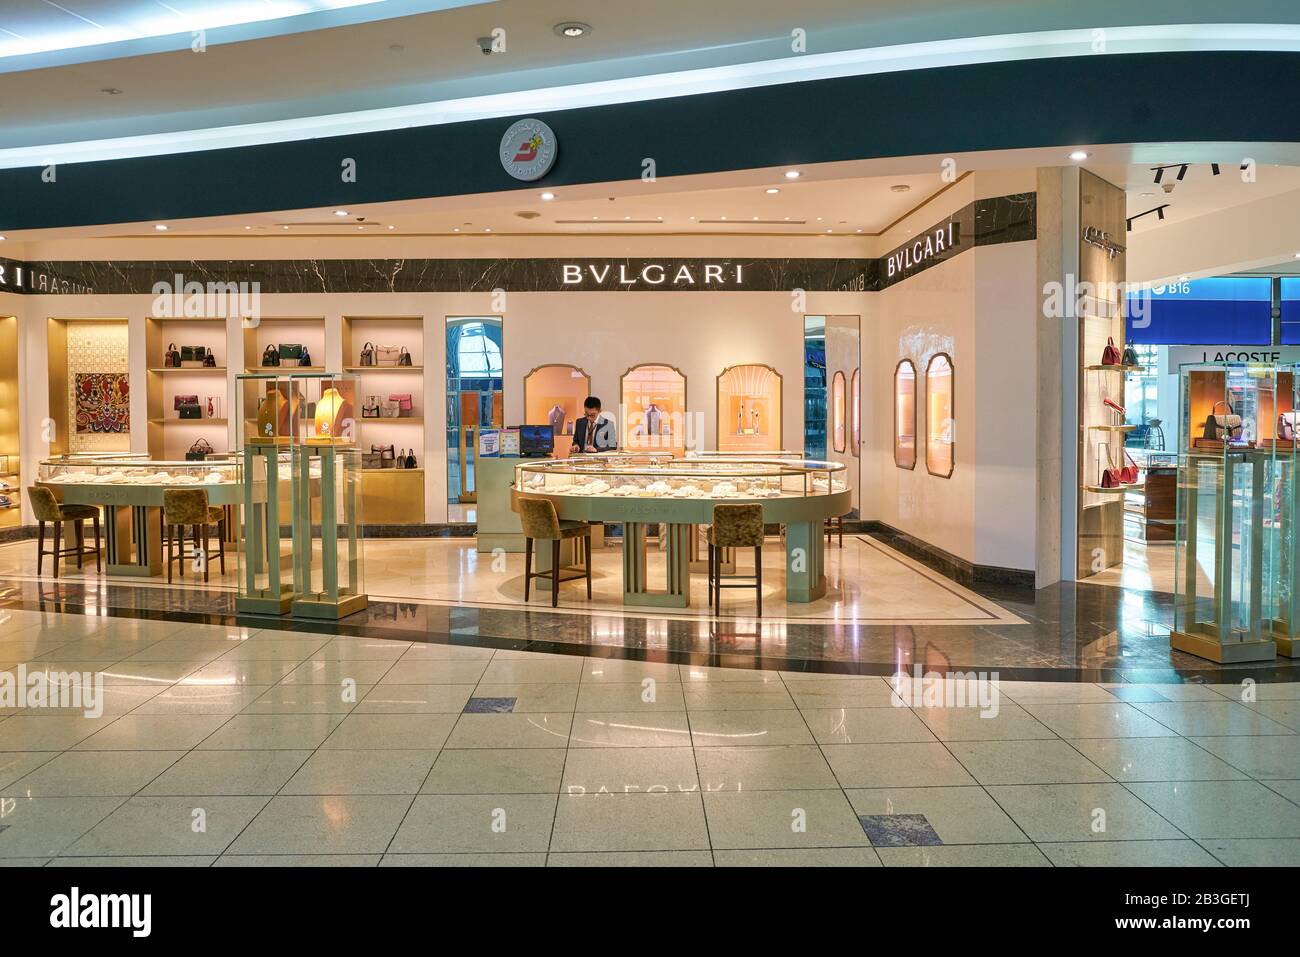 Dubaï, Émirats arabes Unis - VERS JANVIER 2019 : produits Bvlgari exposés dans un magasin de l'aéroport international de Dubaï. Banque D'Images